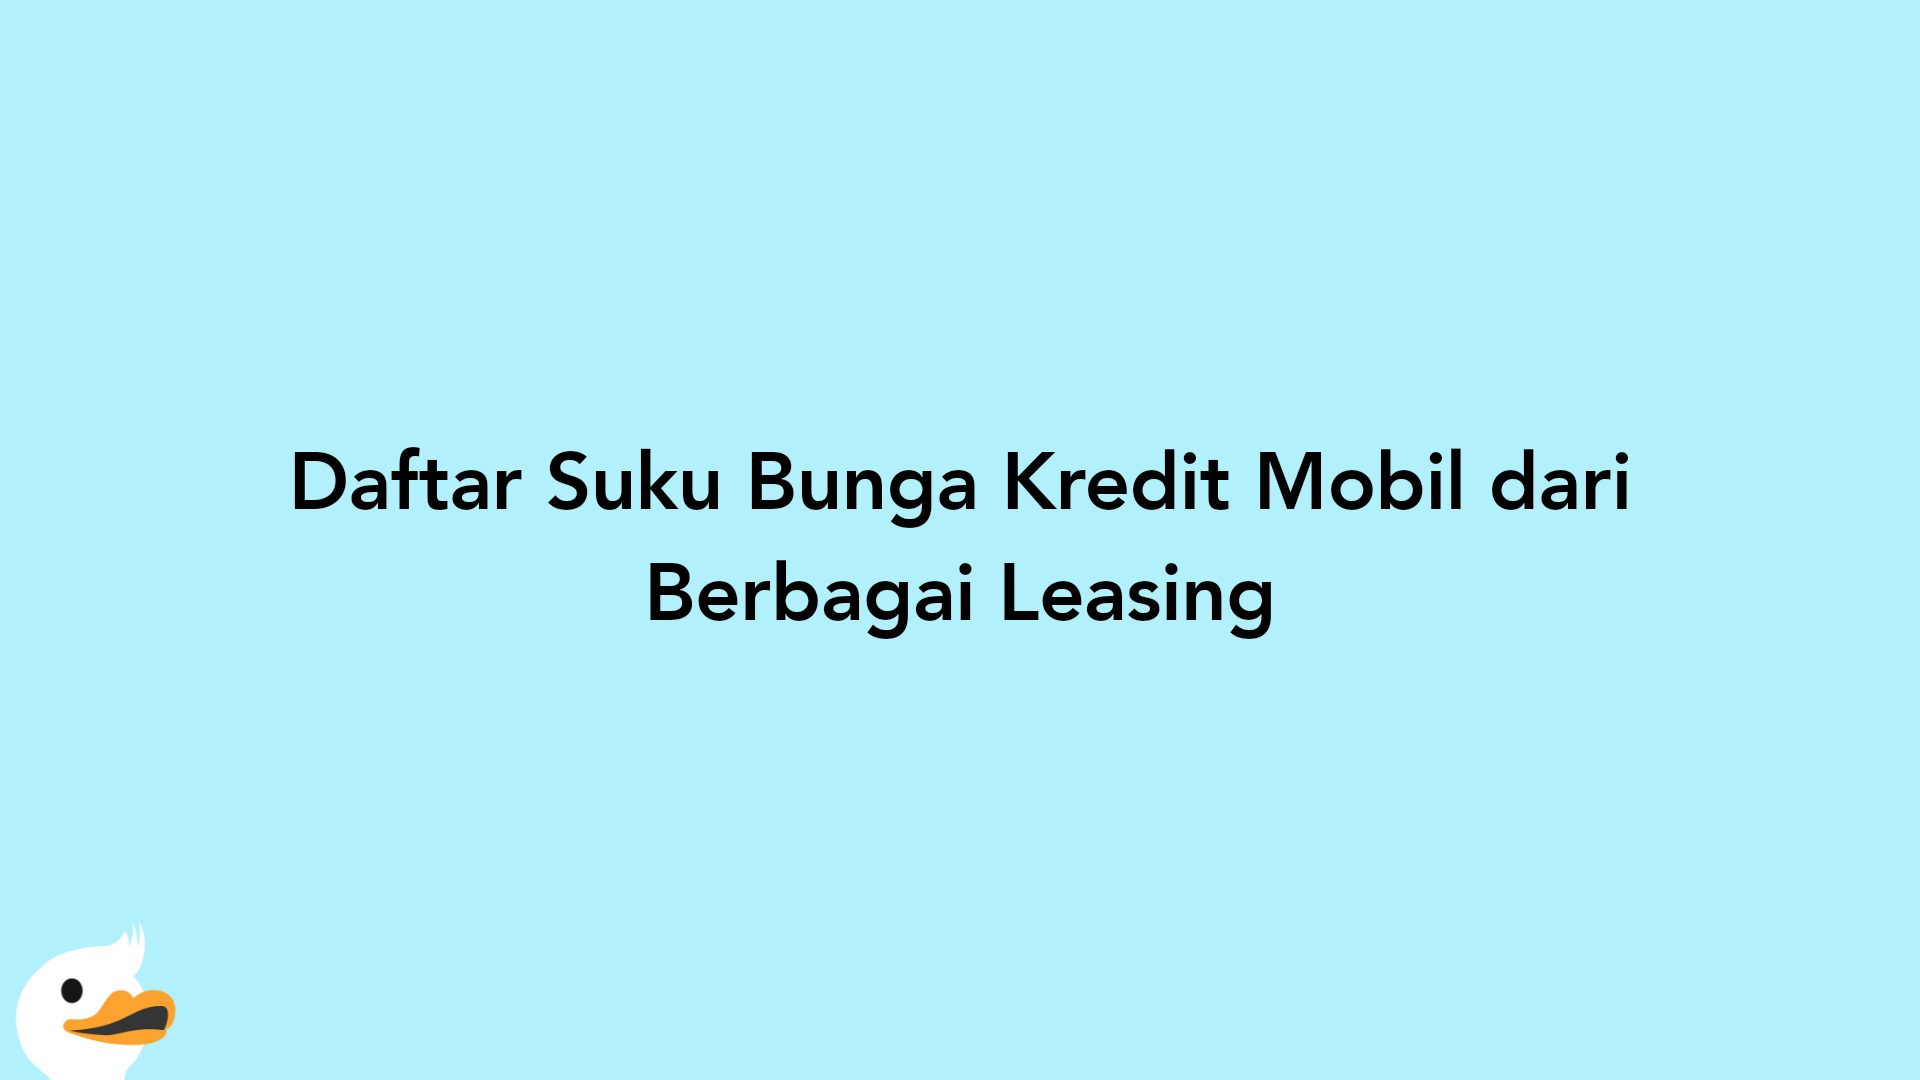 Daftar Suku Bunga Kredit Mobil dari Berbagai Leasing